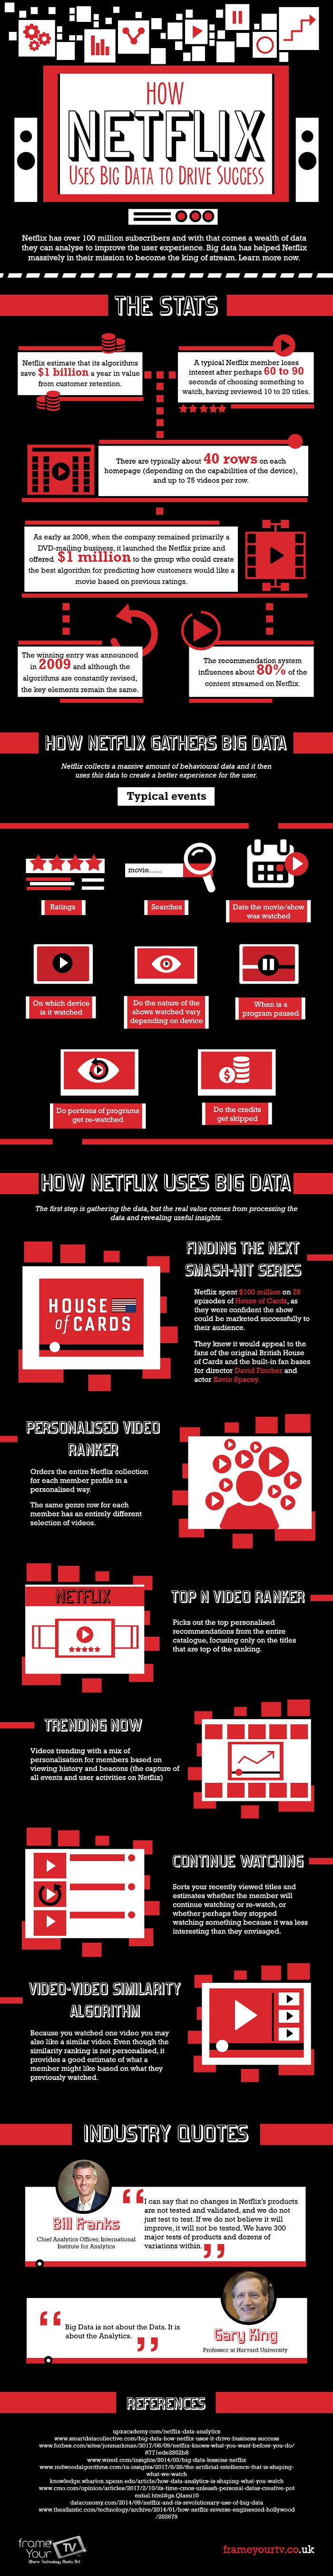 ¿Por qué Big Data es importante para Netflix?